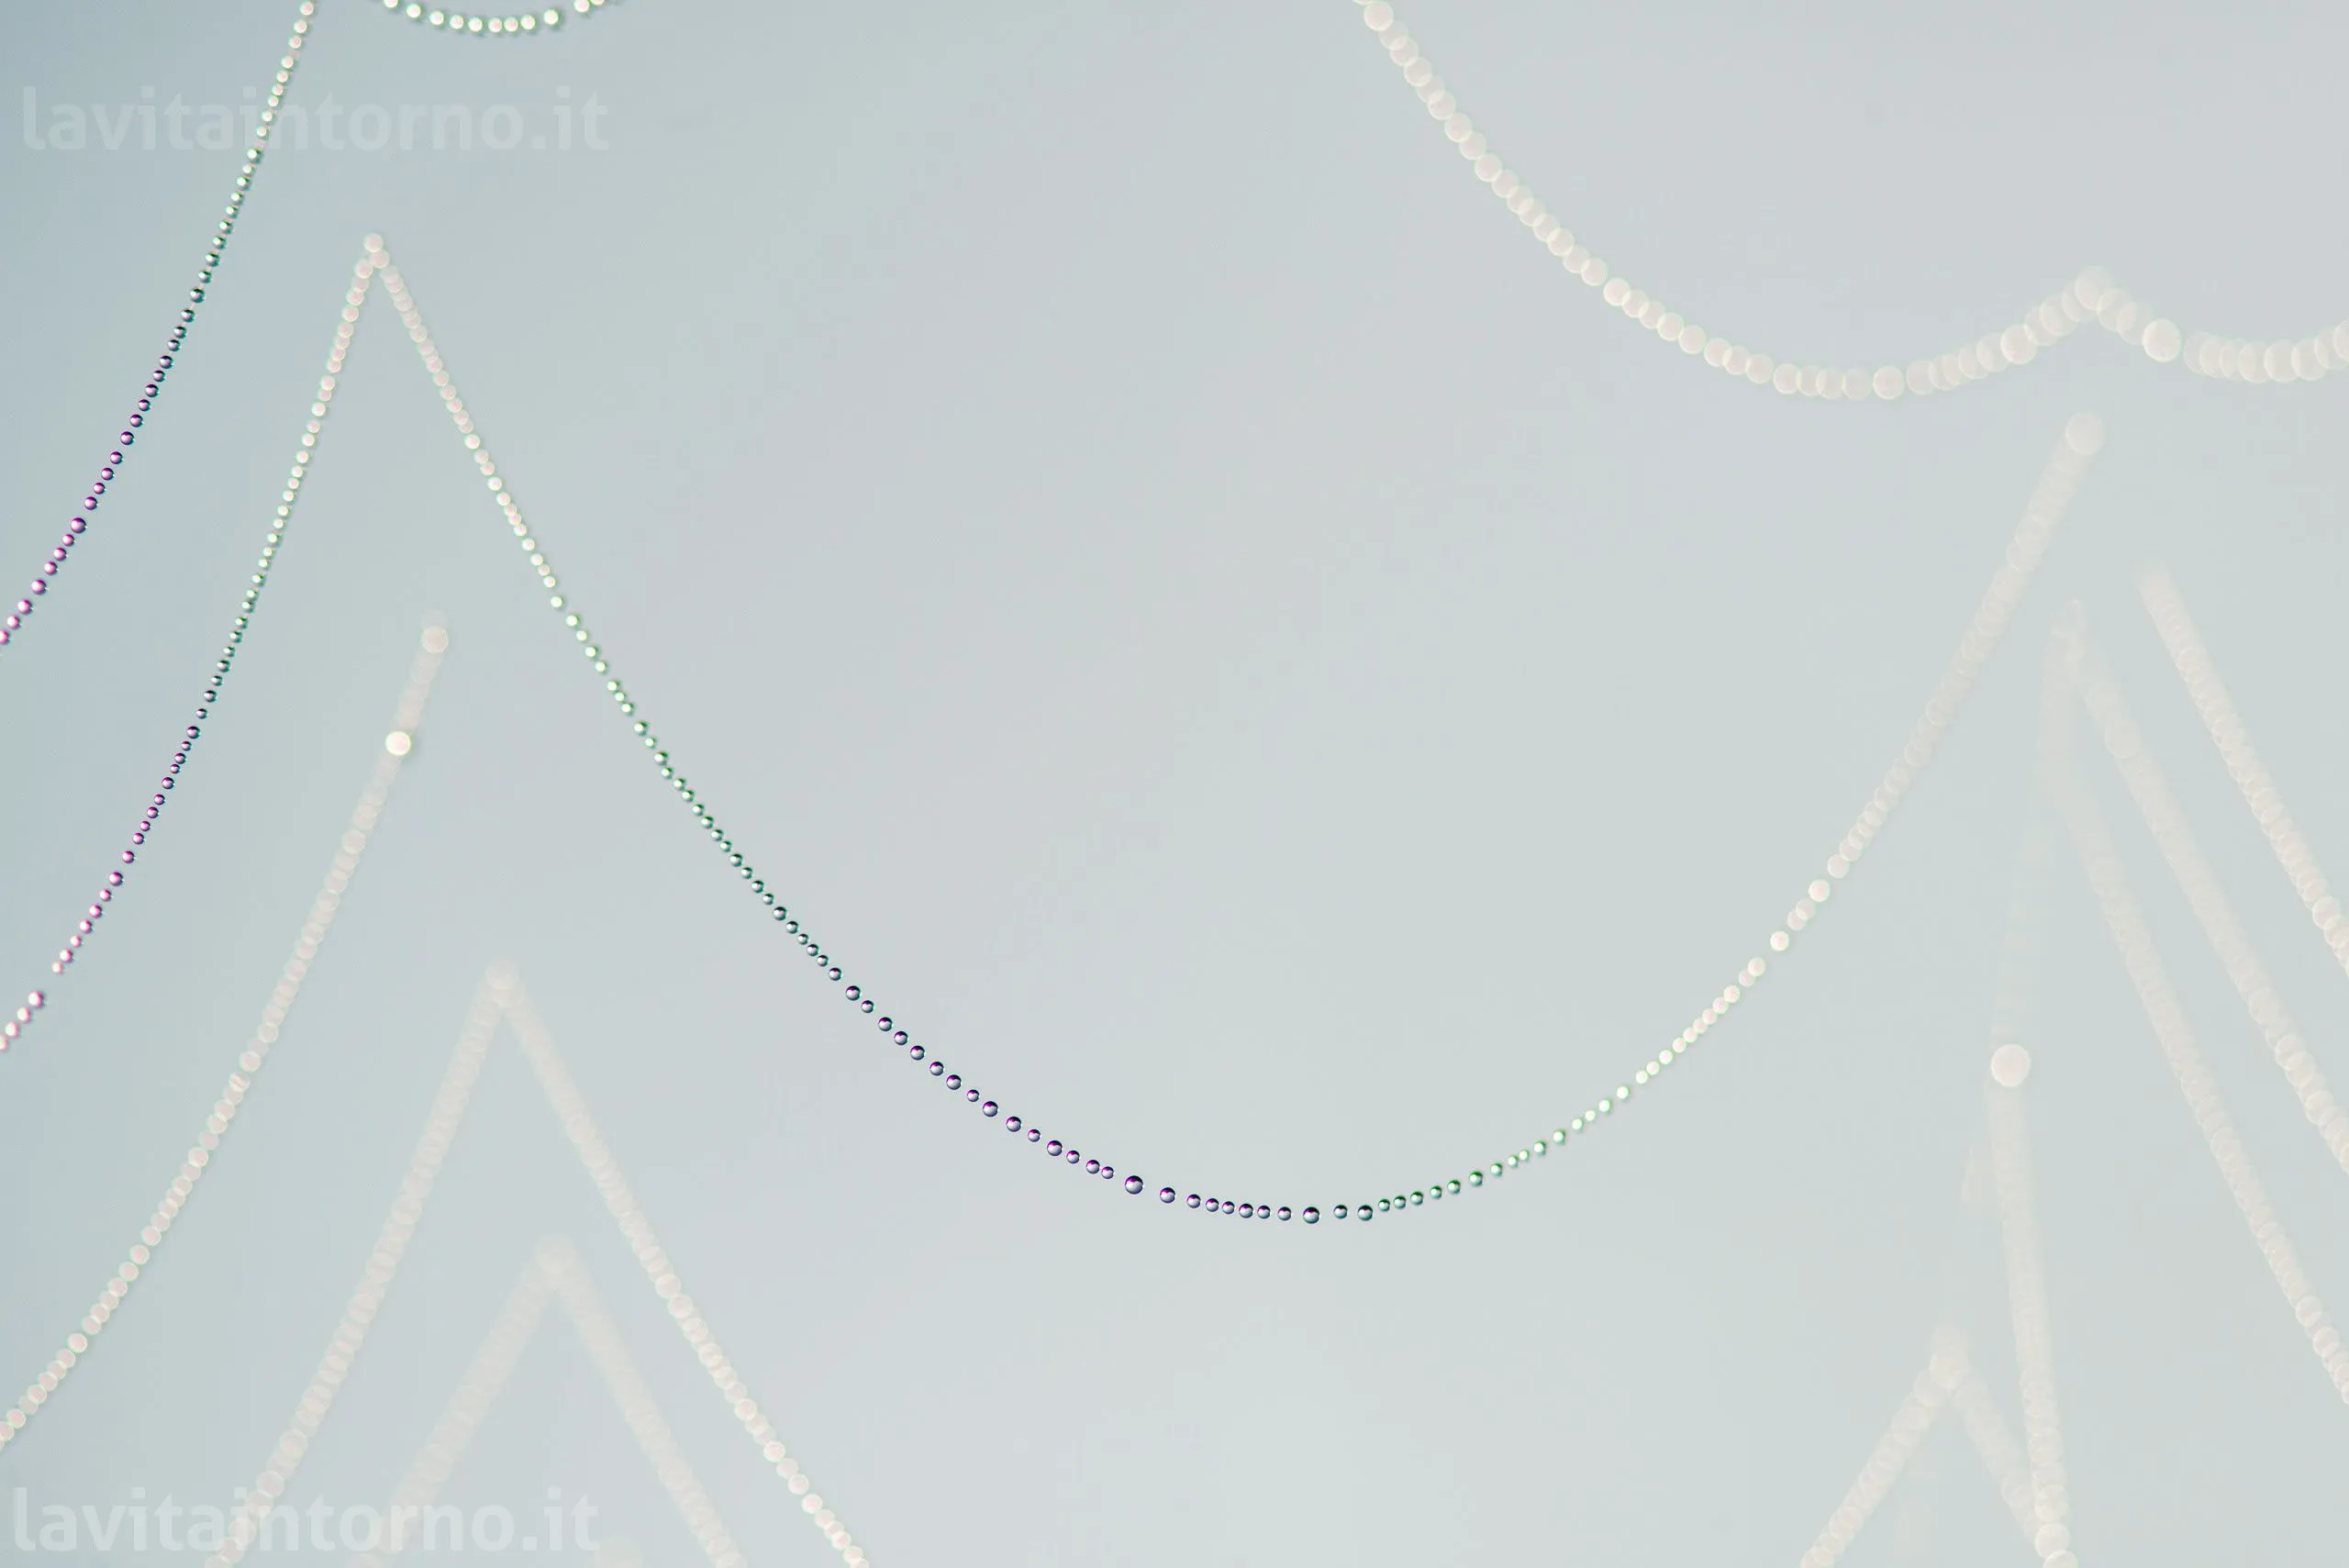 strings of pearls
D800E
Nikkor 105 F/2.8 VR AF-S 